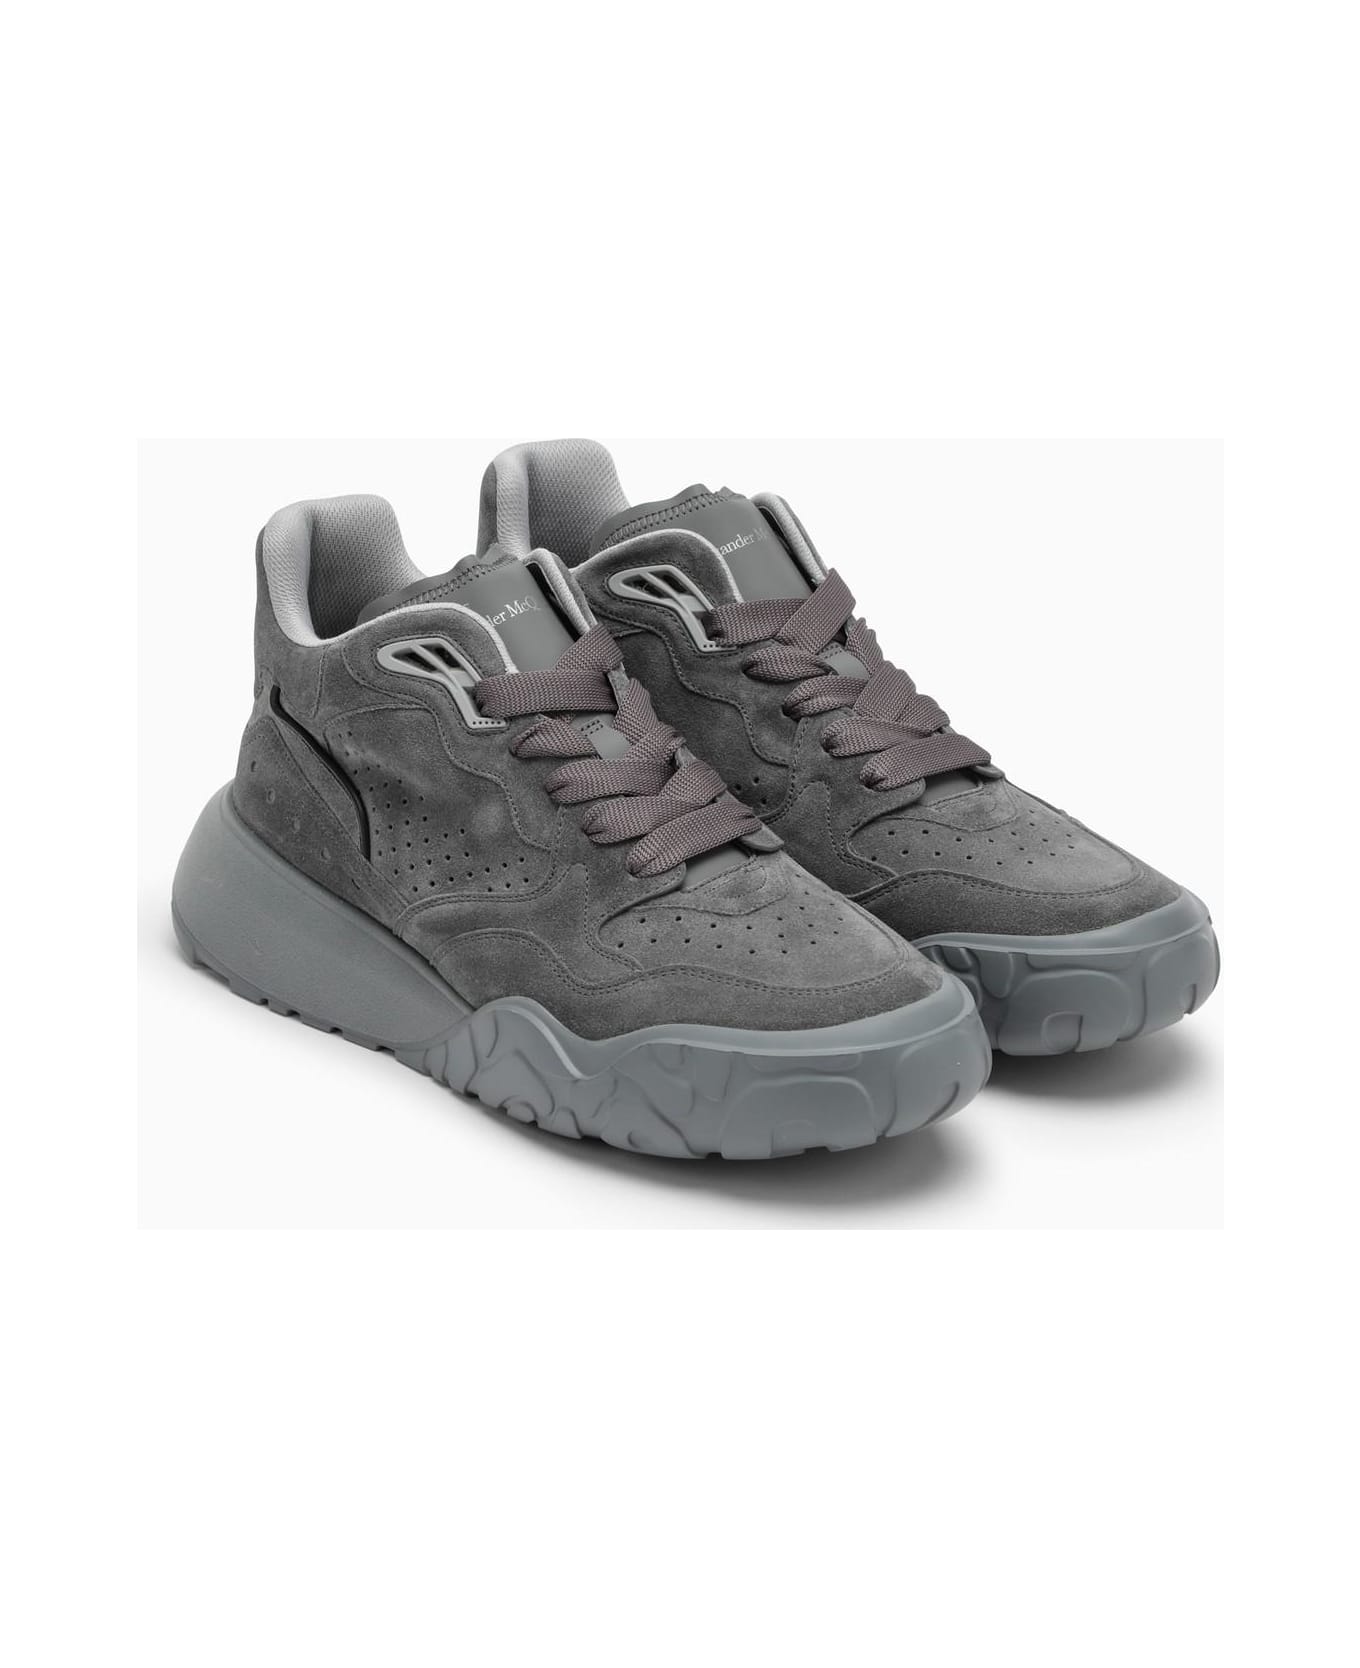 Alexander McQueen Court Sneakers - Grey